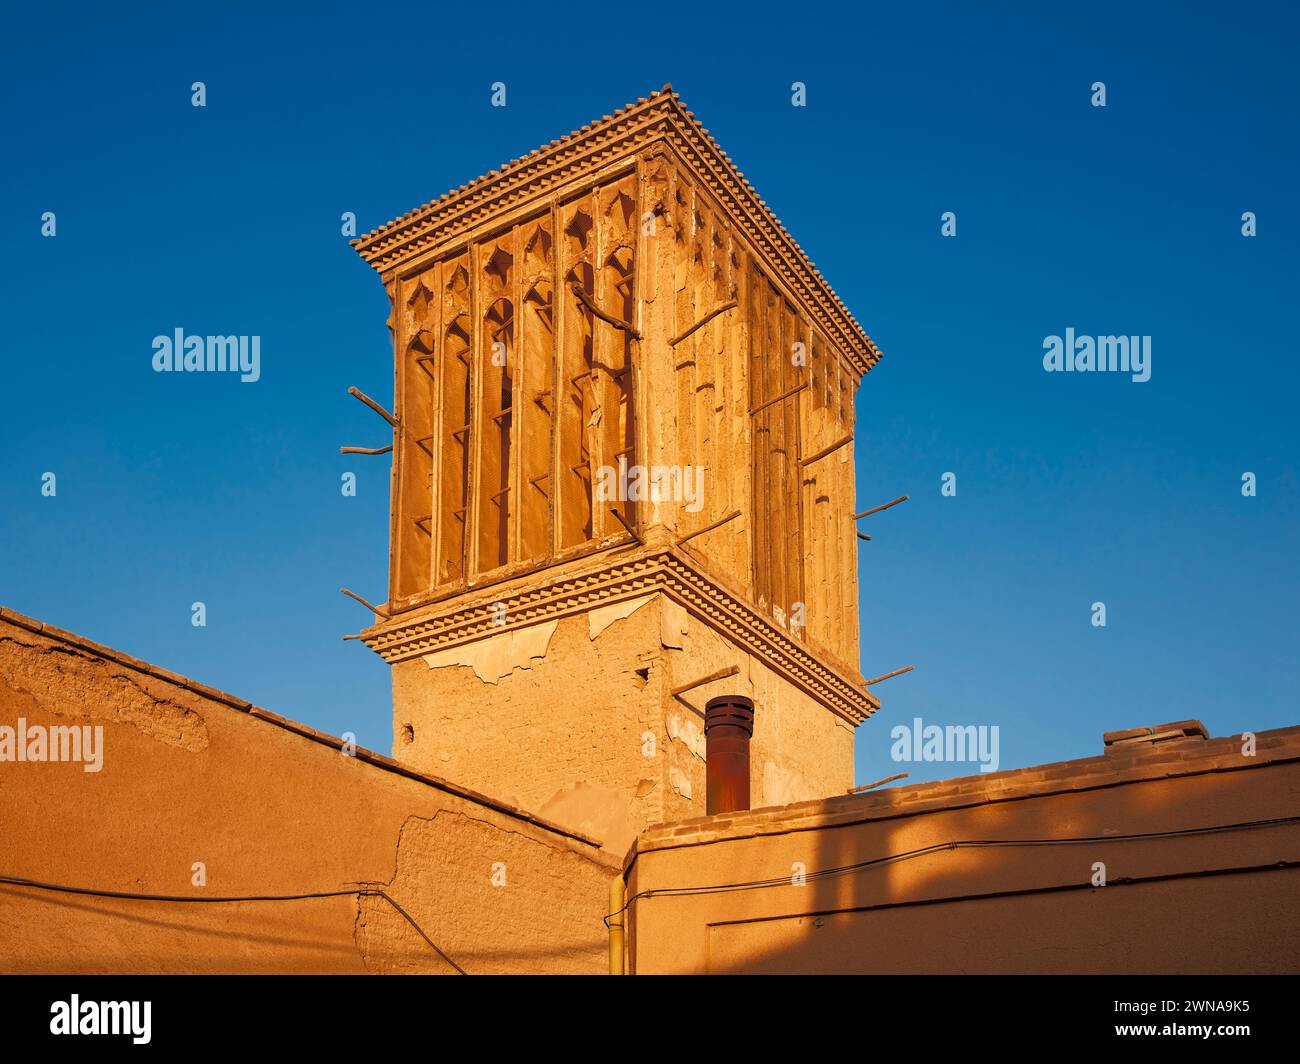 Windcatcher - traditioneller Turm, der zur Querbelüftung und passiven Kühlung von Gebäuden in der historischen Altstadt von Yazd, Iran, verwendet wird. Stockfoto